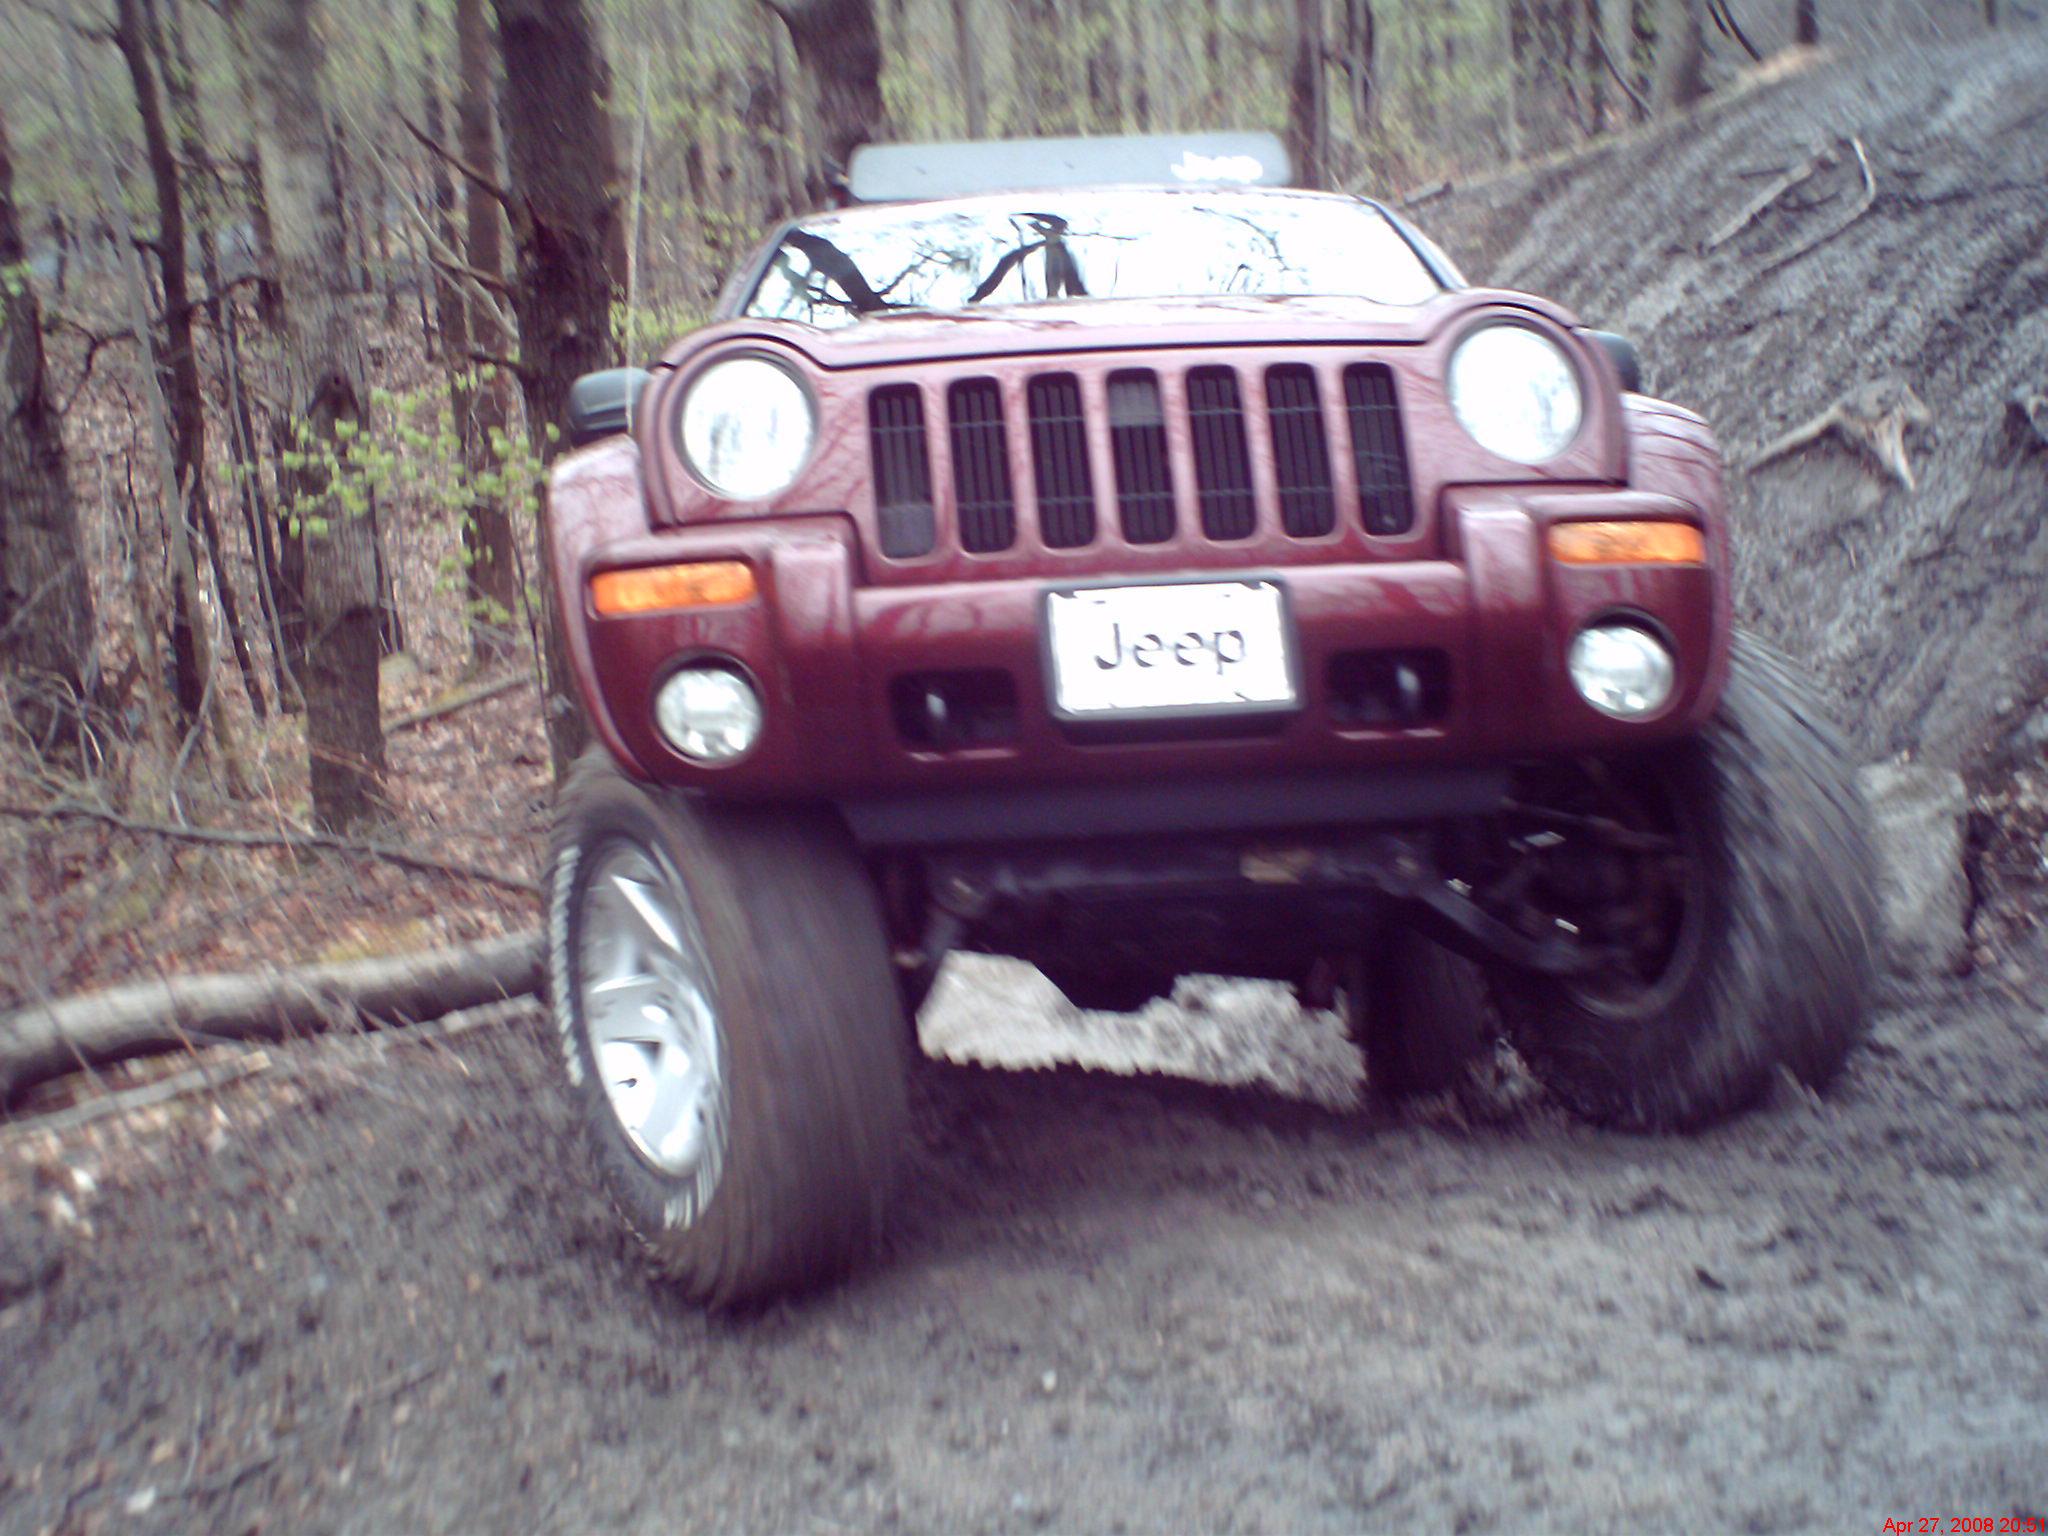 2003 Jeep Liberty LTD